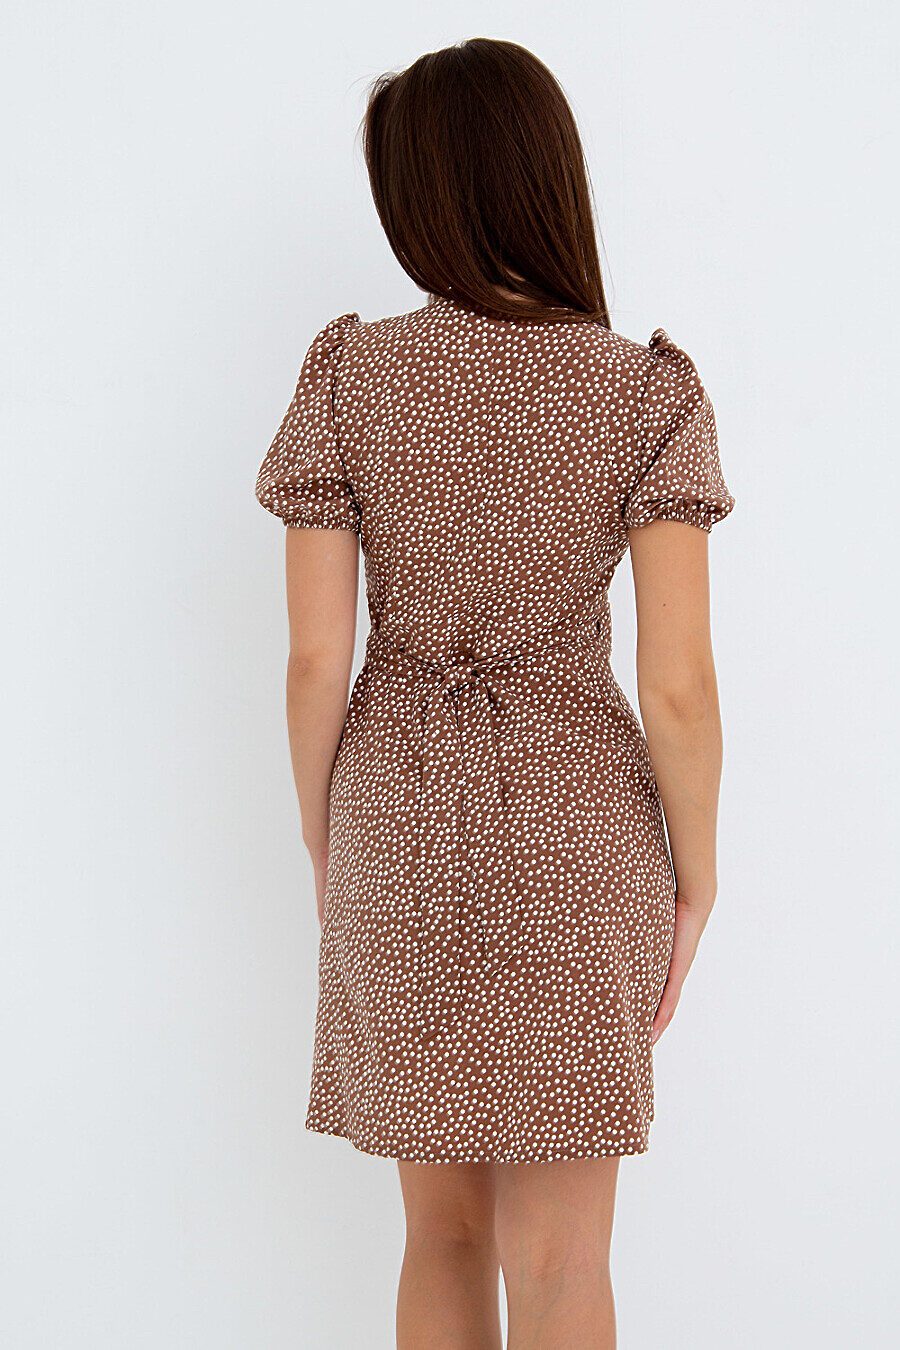 Платье П-18 для женщин НАТАЛИ 775471 купить оптом от производителя. Совместная покупка женской одежды в OptMoyo